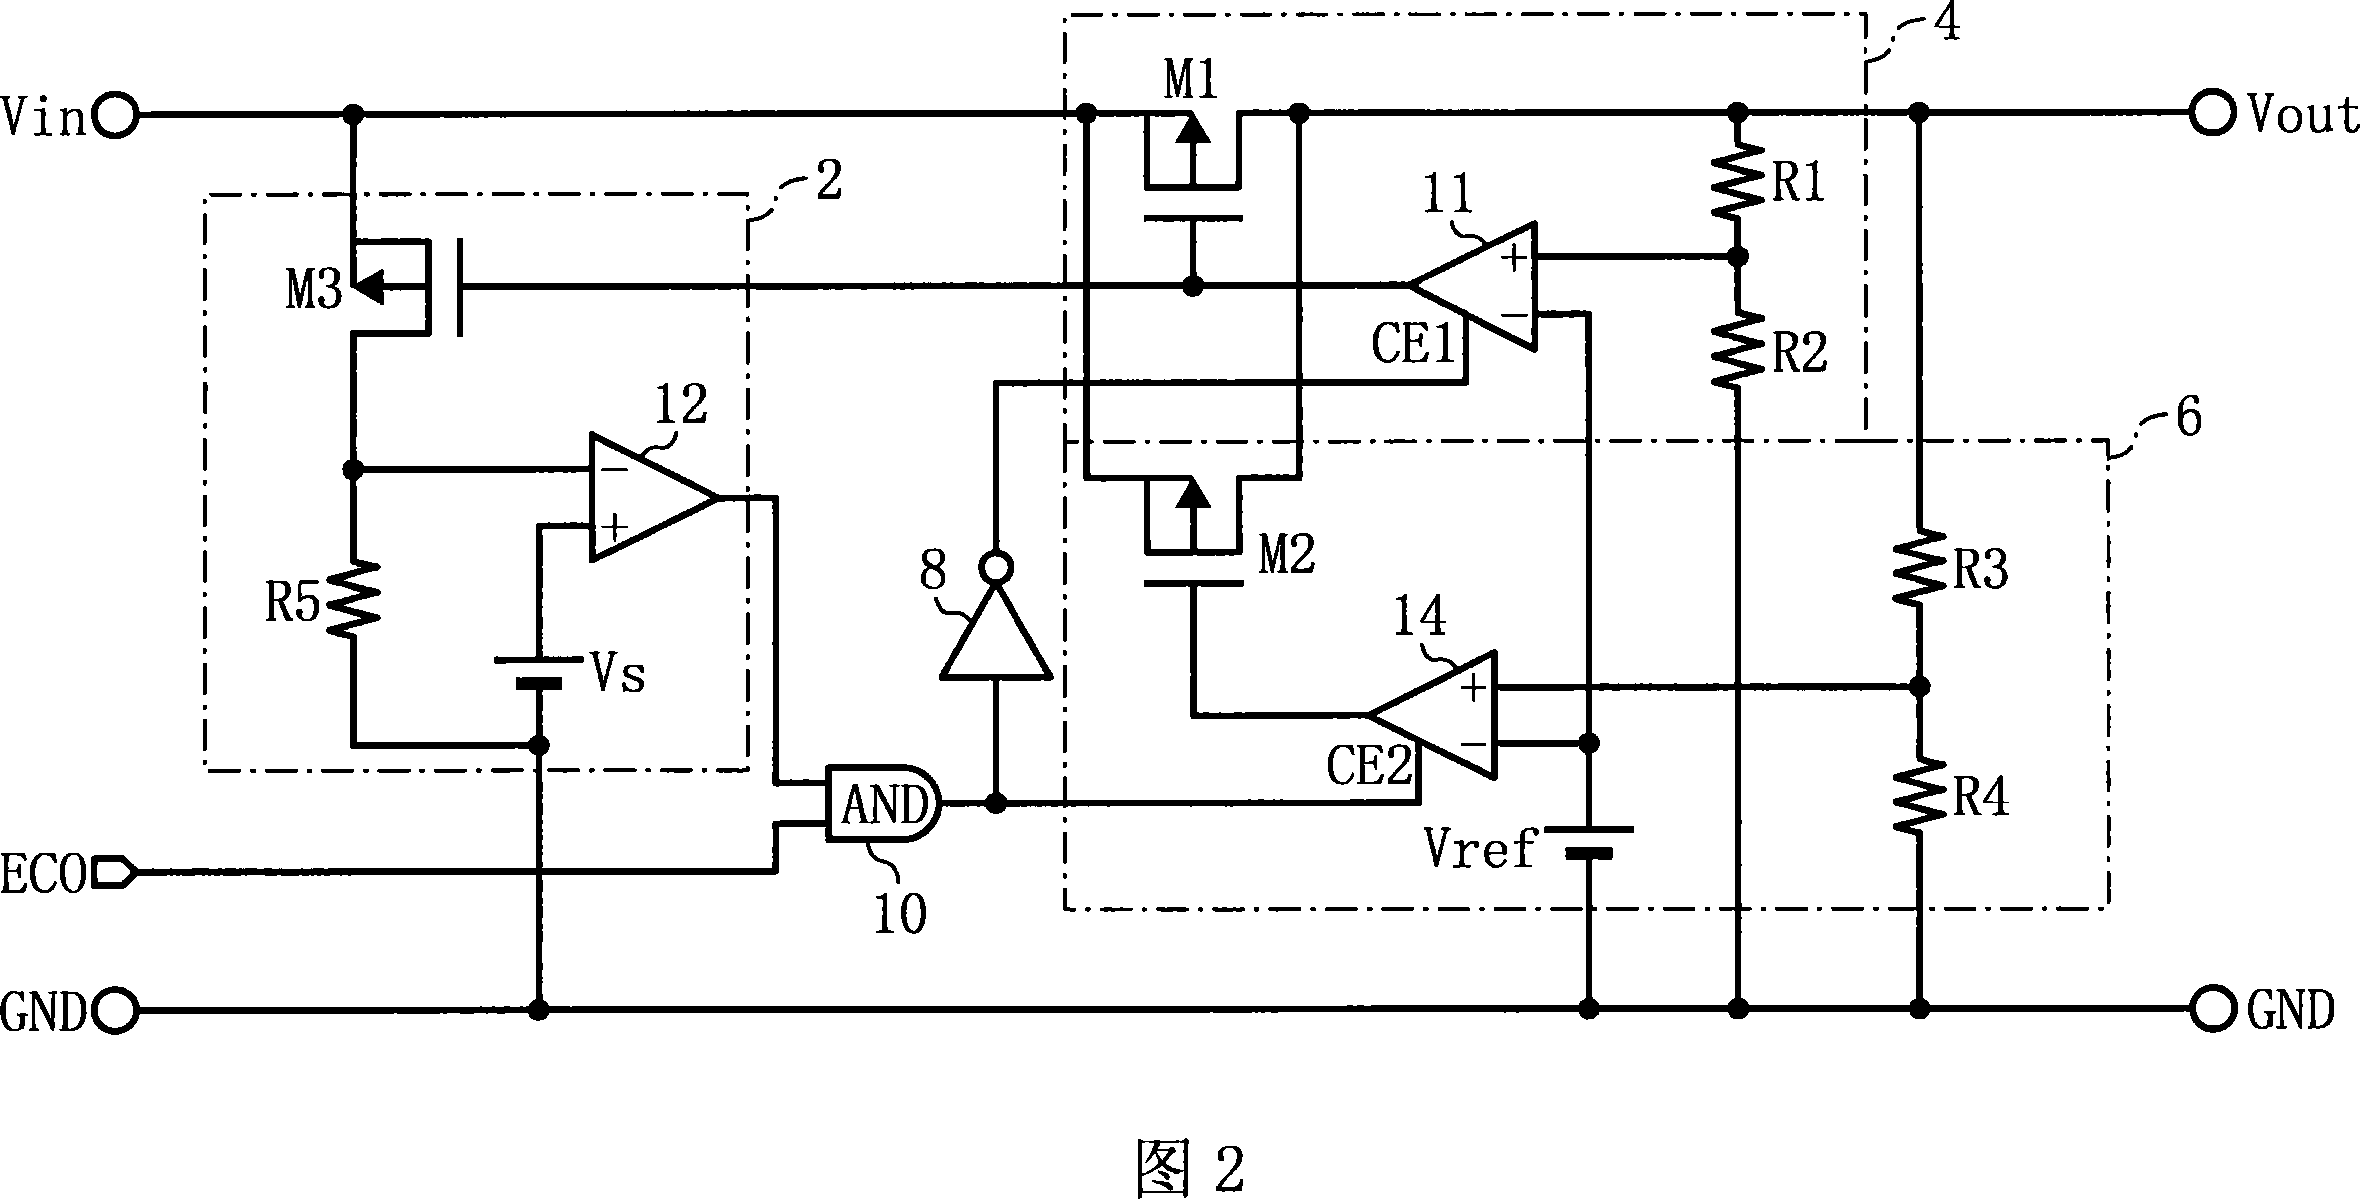 Constant voltage supply circuit